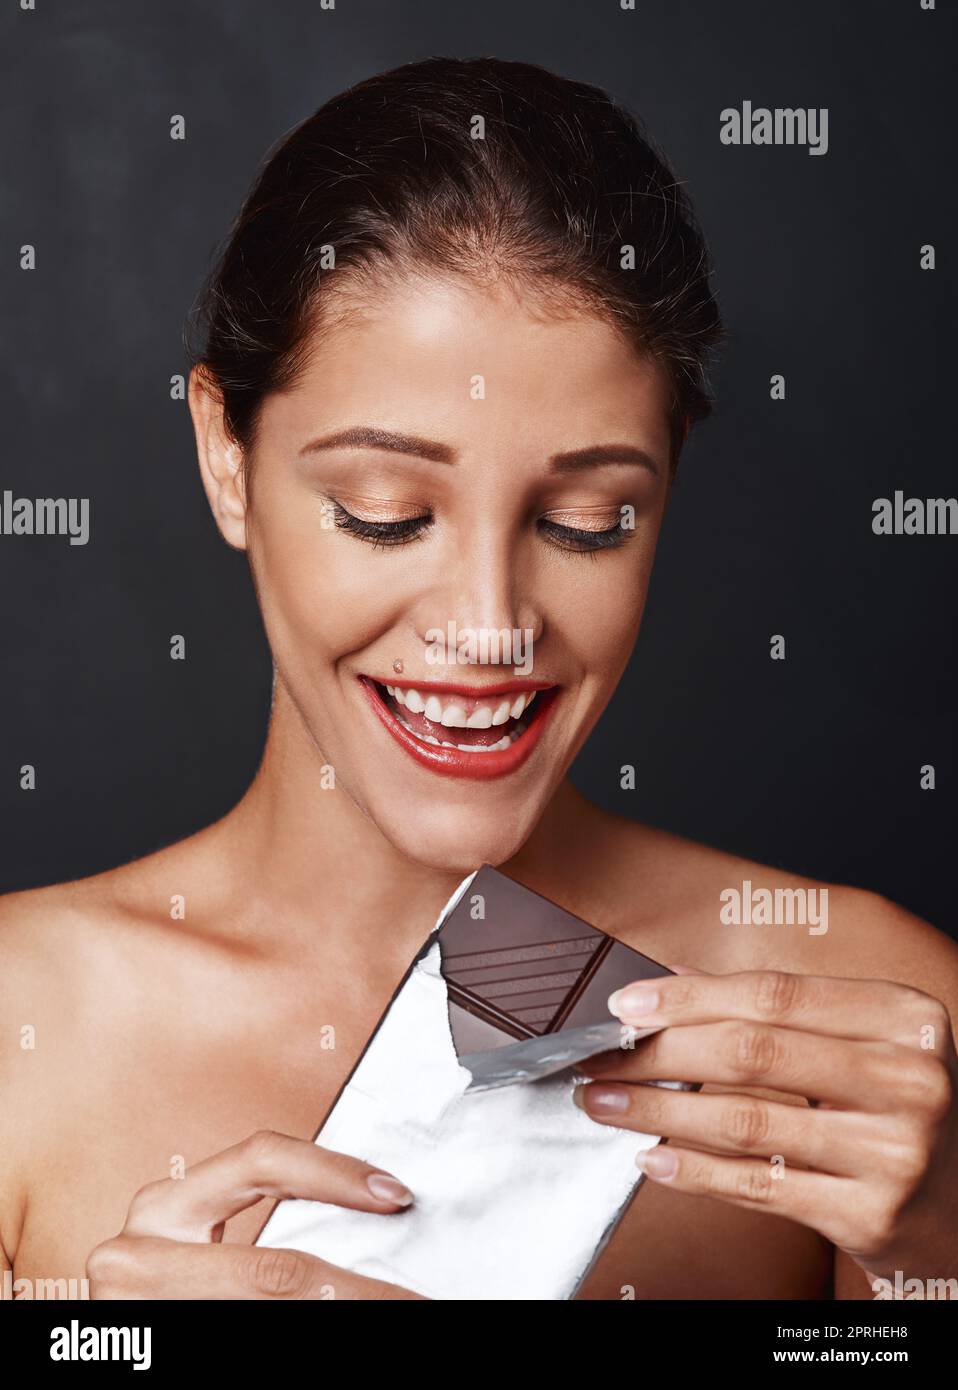 Schokolade ist die Antwort. Studioaufnahme einer attraktiven jungen Frau, die ein Stück Schokolade genießt. Stockfoto